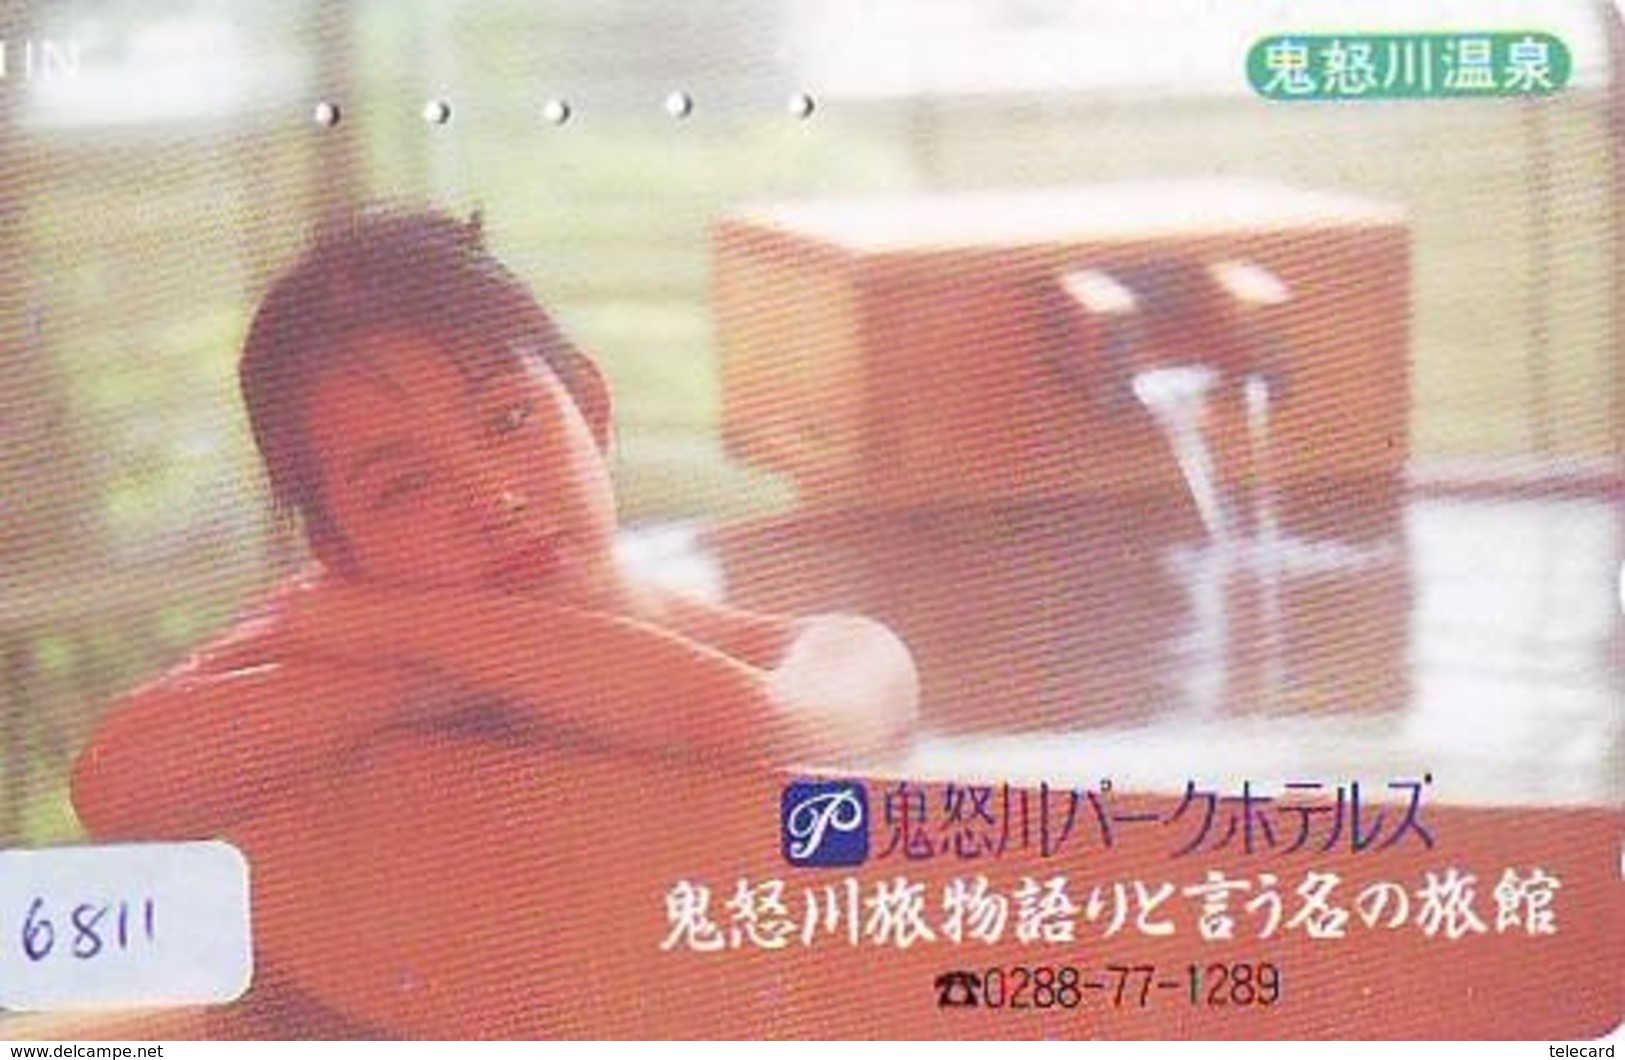 Télécarte Japon * EROTIQUE (6811) DANS LA BAIN *  EROTIC PHONECARD JAPAN * TK * BATHCLOTHES * FEMME SEXY LADY LINGERIE - Mode